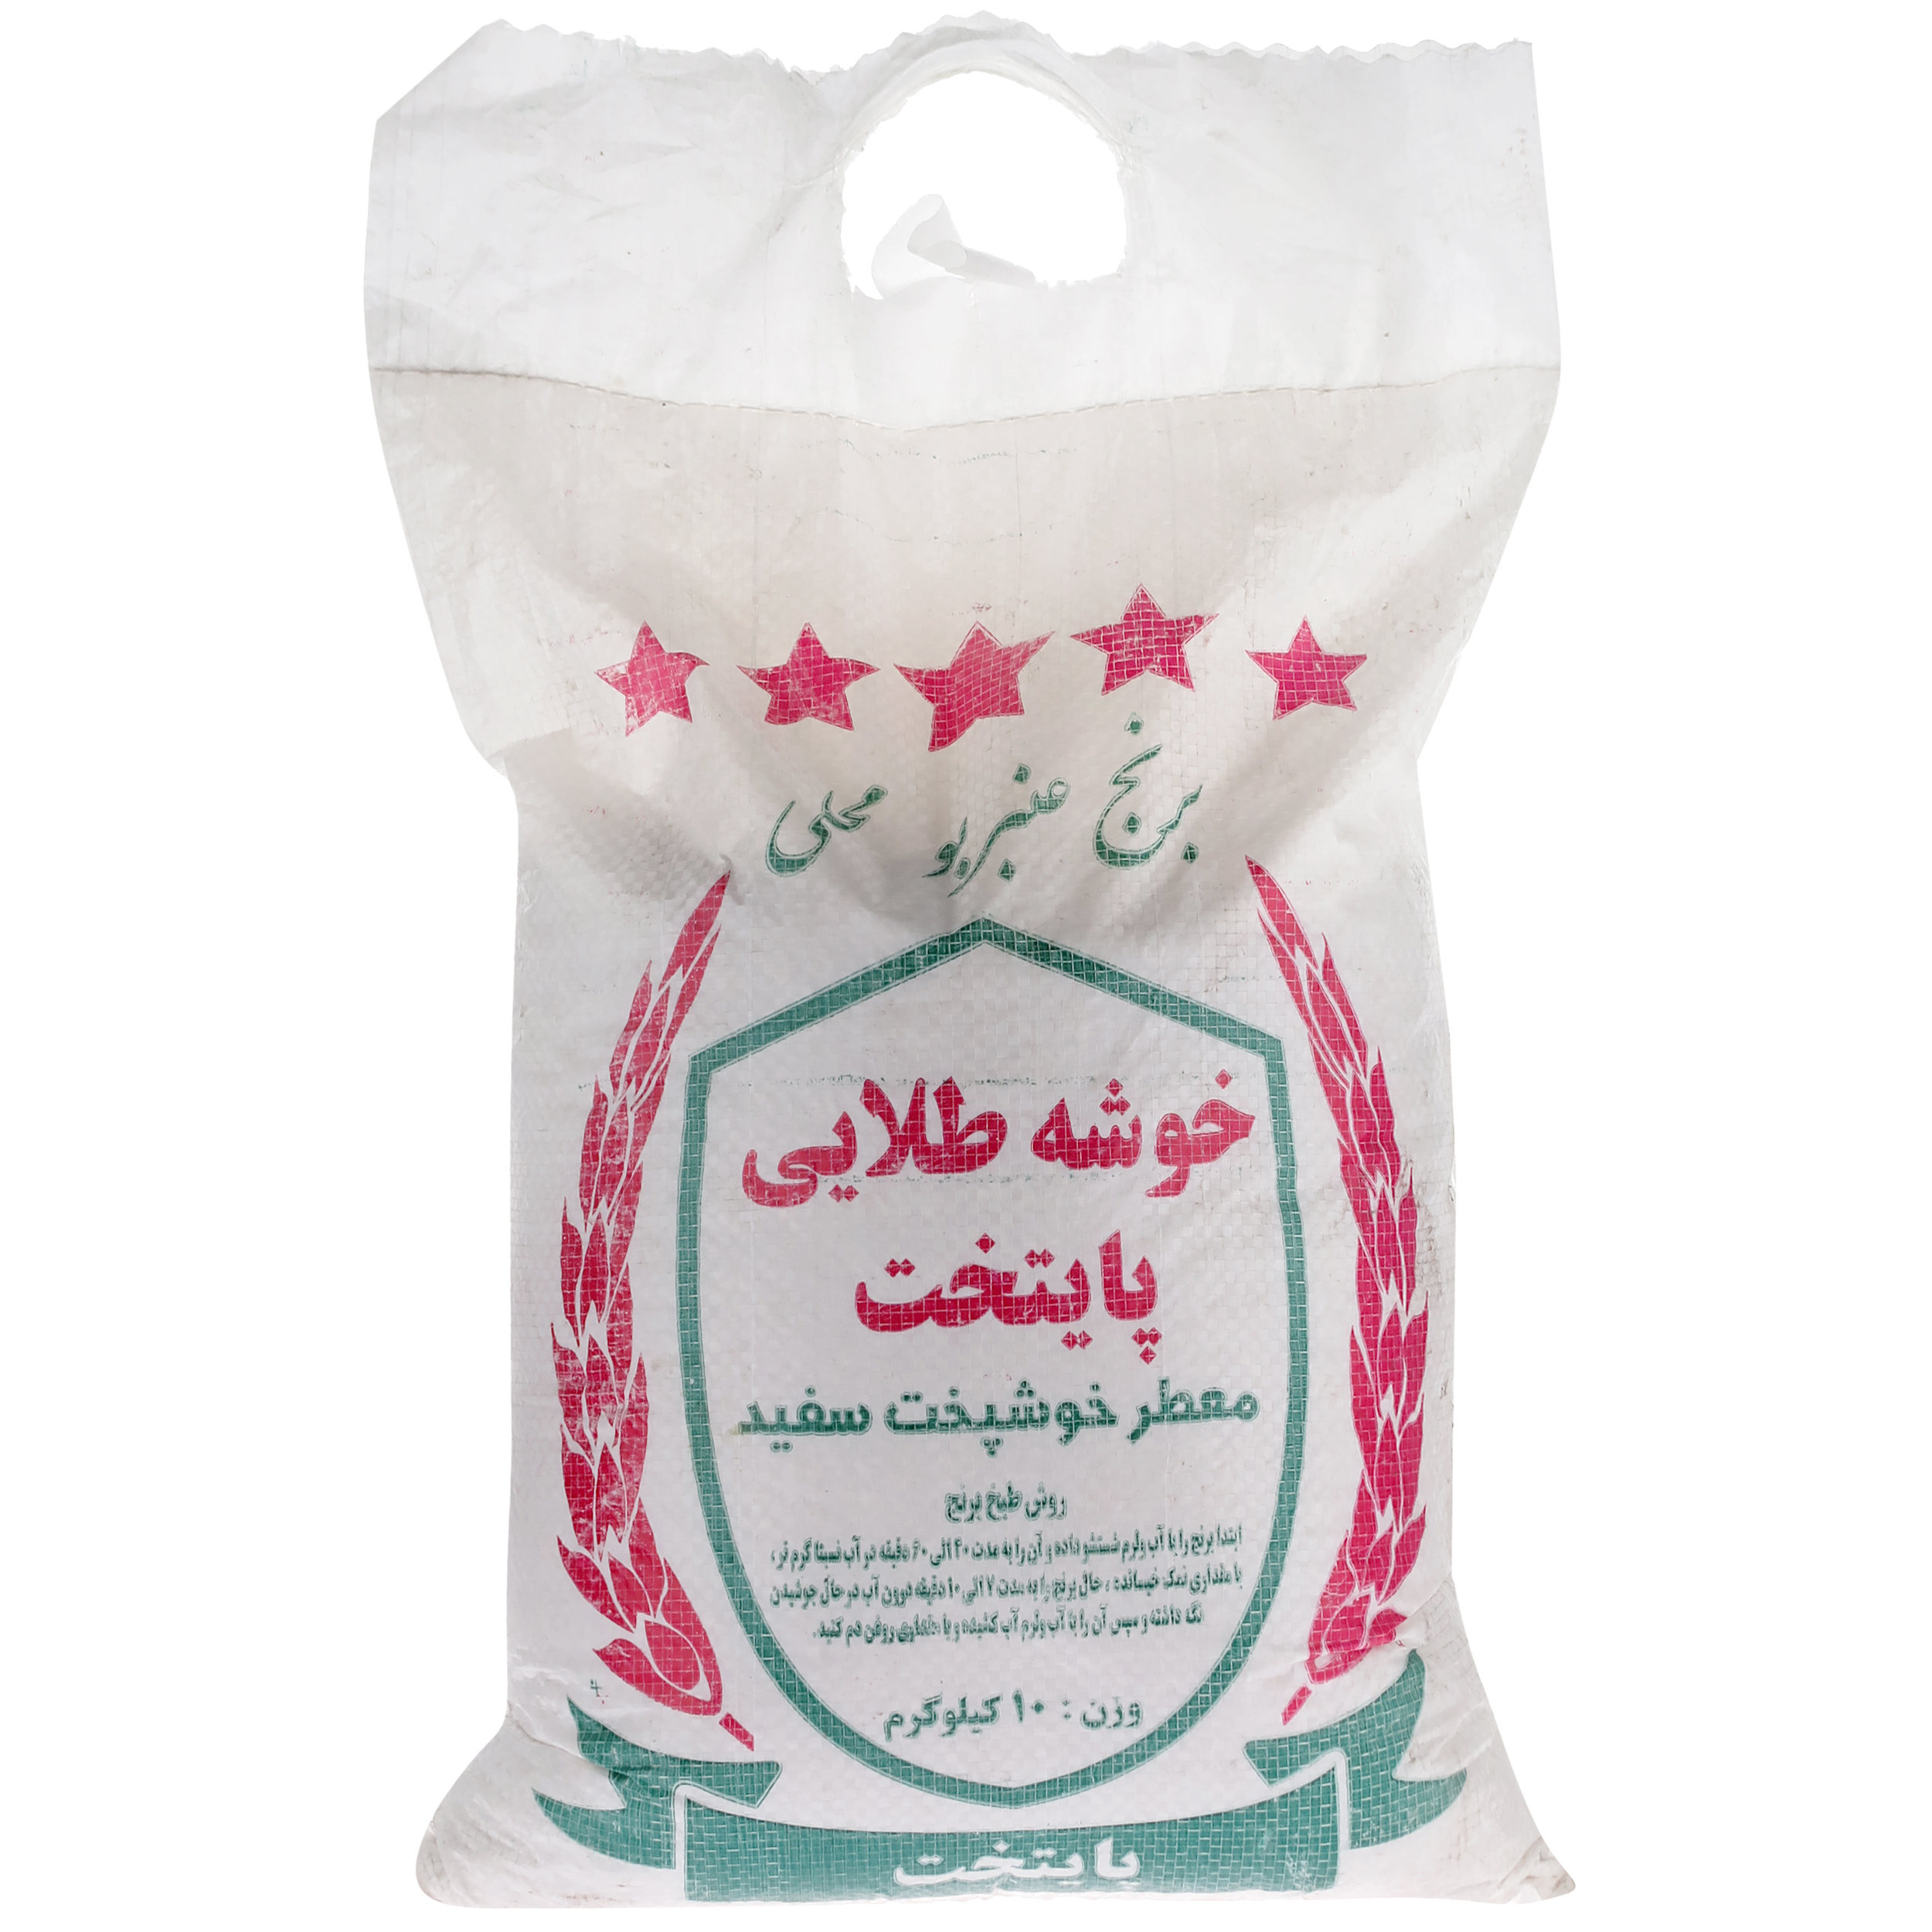 برنج ایرانی عنبر بو خوشه طلایی پایتخت - 10 کیلوگرم